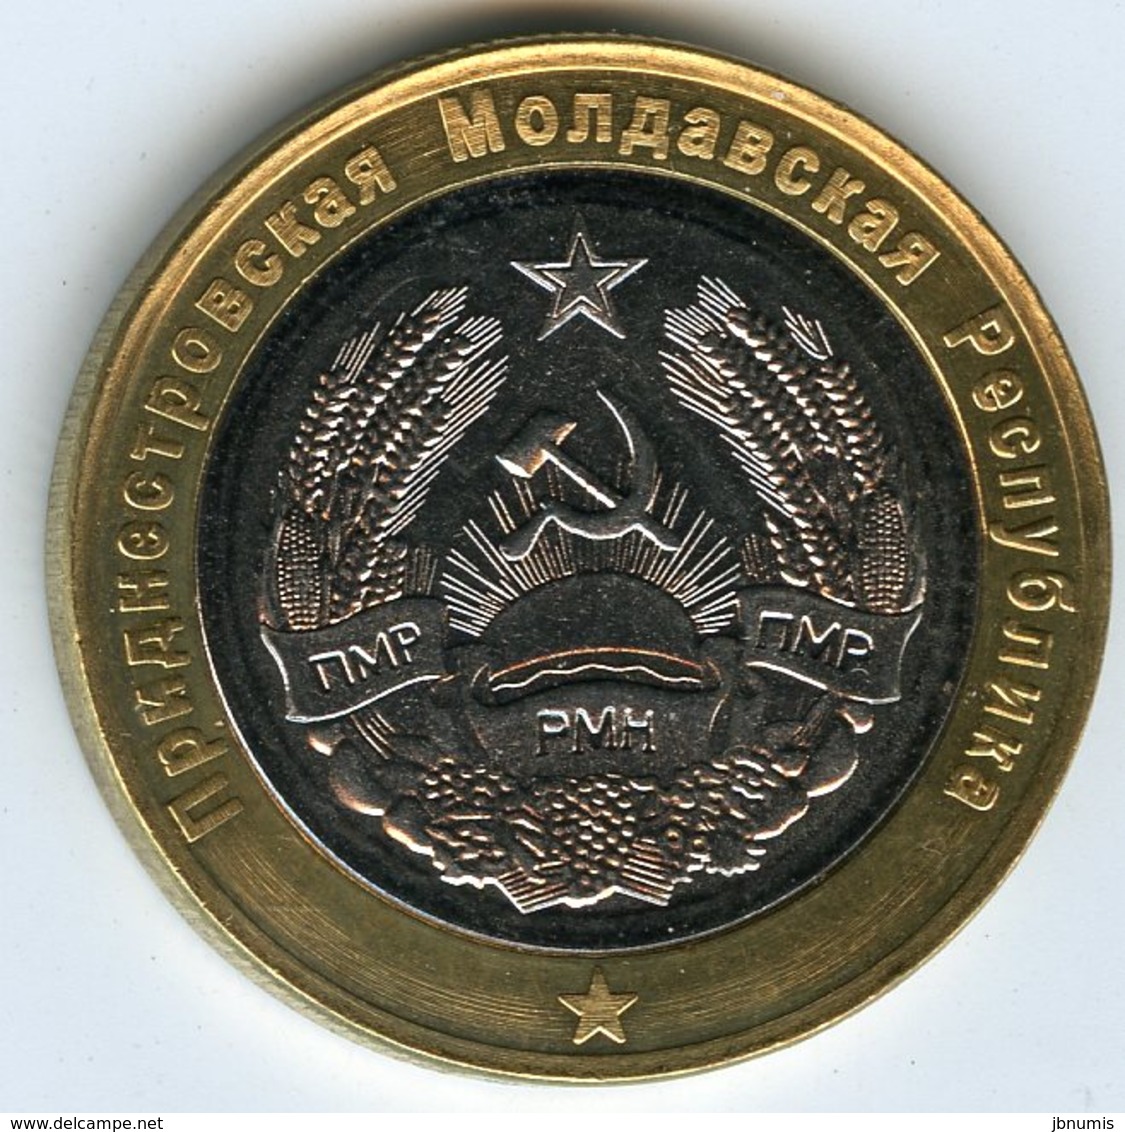 Moldavie Moldova Transdniestrie Transdnistria 100 Rublei 2011 Jean-Paul II Pape Pope UNC - Moldawien (Moldau)